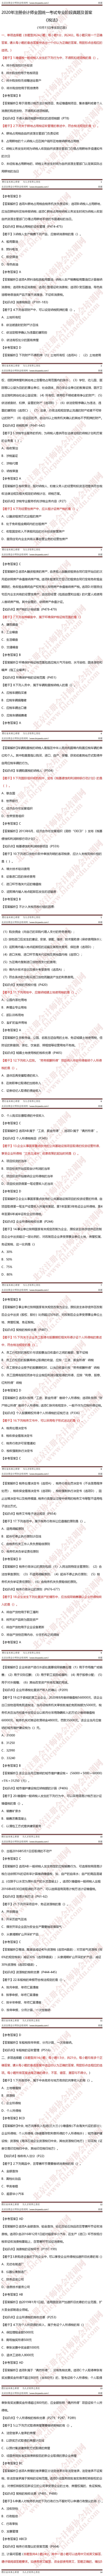 2020年注册会计师考试11号税法 -crop.jpg